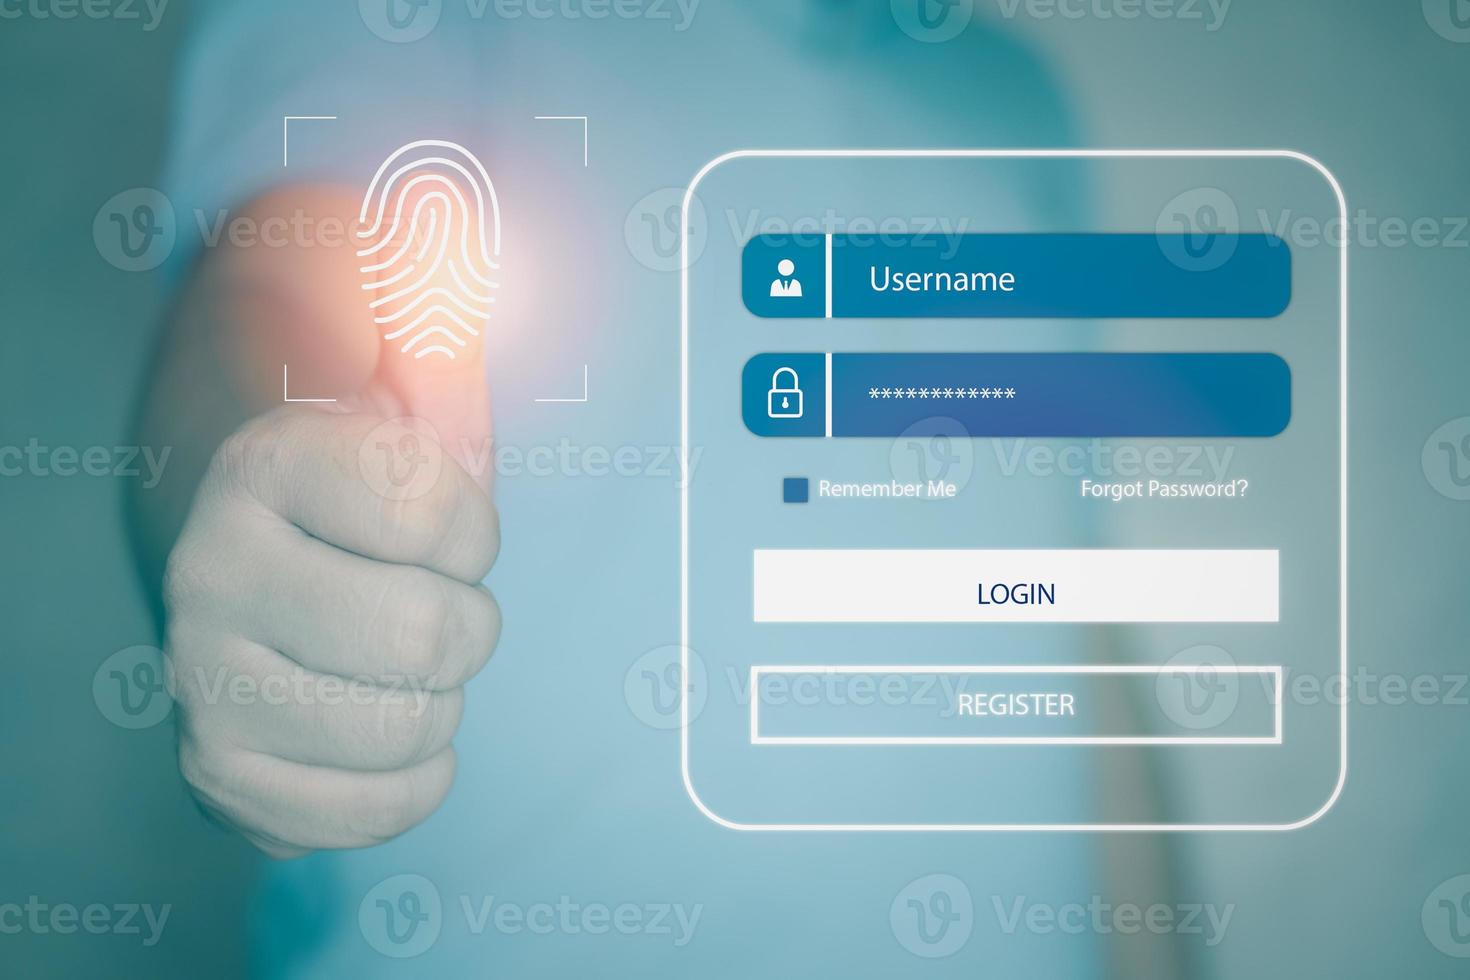 zakenlieden gebruiken hun duimen om het vingerafdrukscansysteem aan te raken. vingerafdruk scanner technologie concept om identiteit te verifiëren. foto